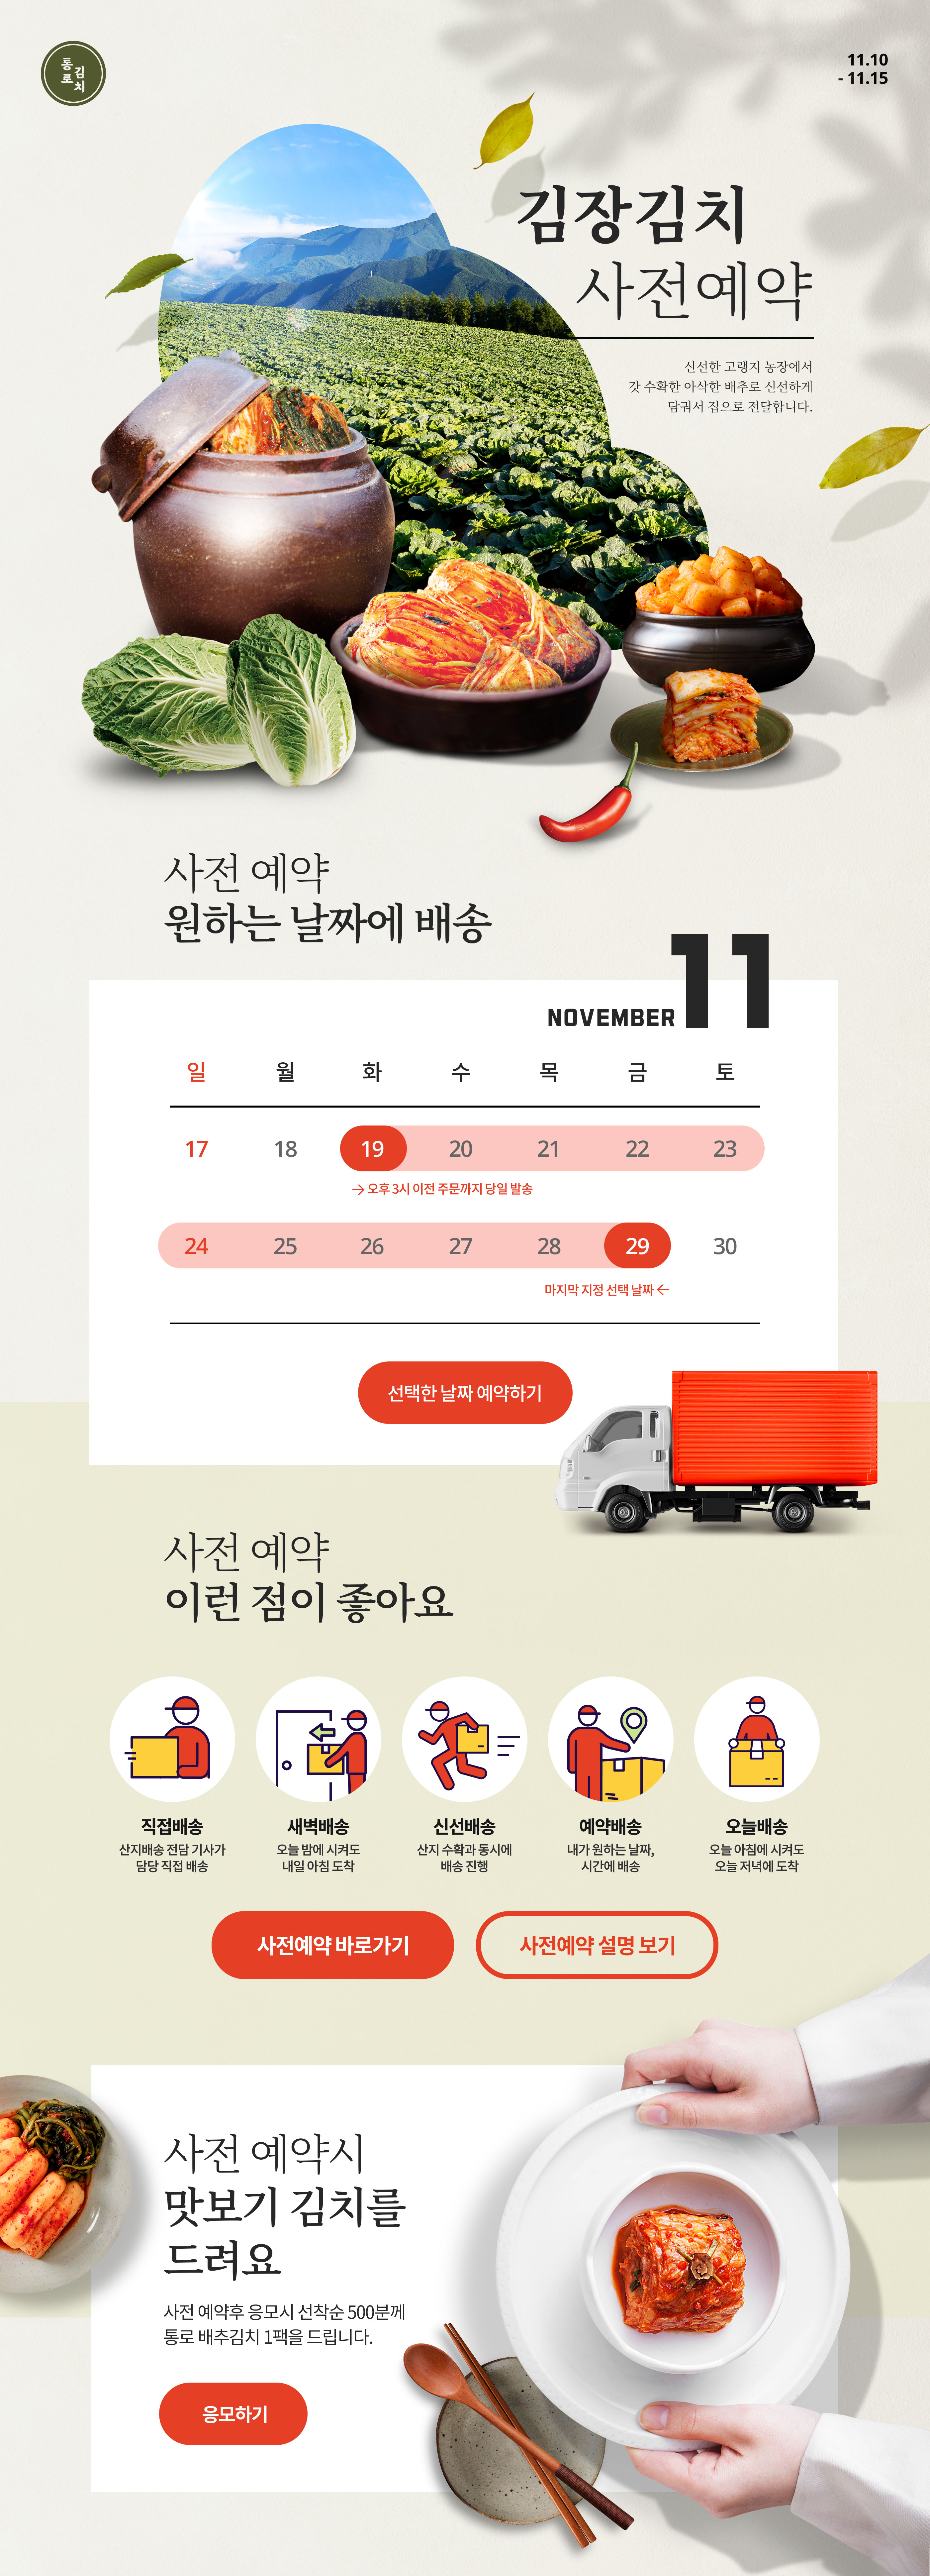 韩式有机蔬菜店铺新年促销活动网页模板